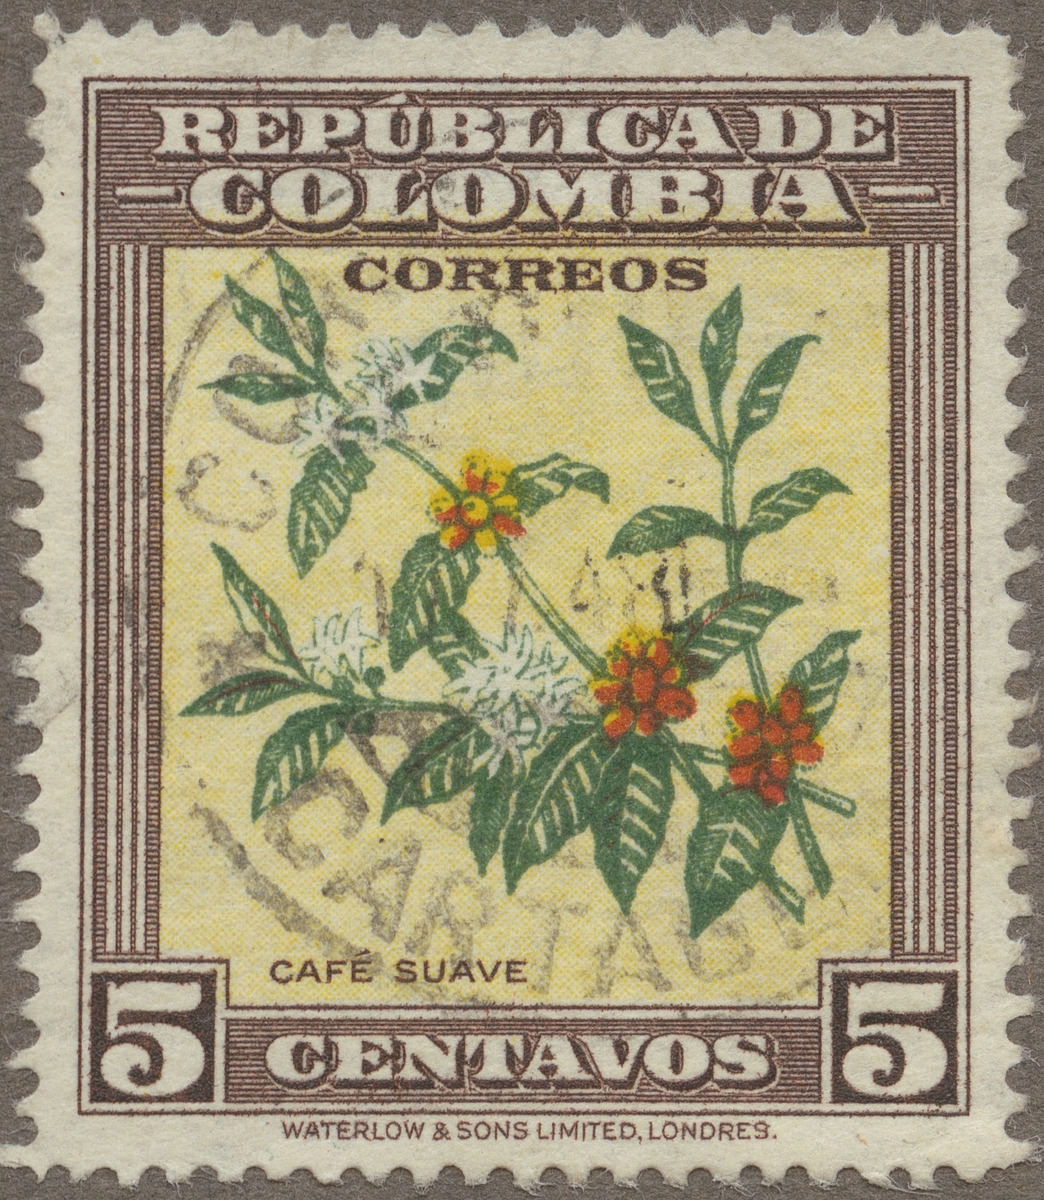 Frimärke ur Gösta Bodmans filatelistiska motivsamling, påbörjad 1950.
Frimärke från Colombia, 1947. Motiv av kaffebuskens gren med blommor och frukt.